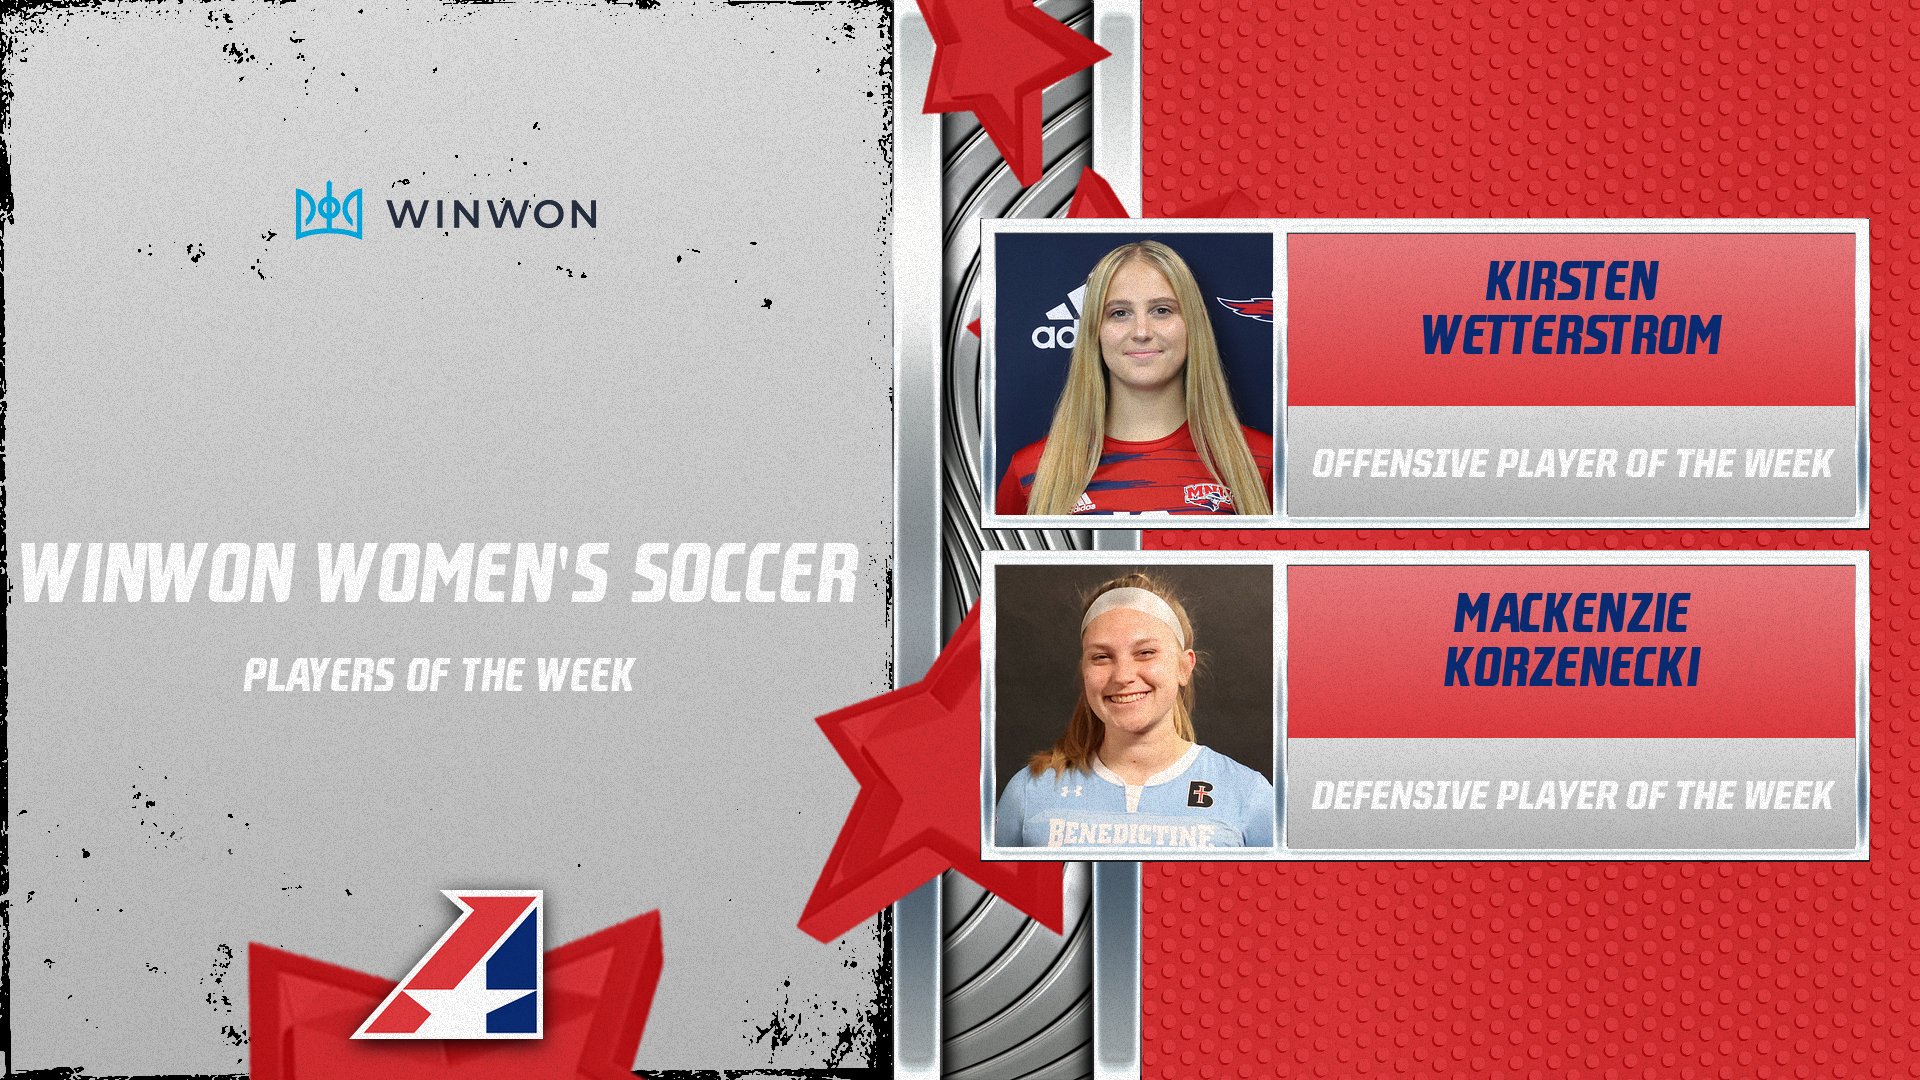 Korzenecki, Wetterstrom Selected WinWon Women’s Soccer Players of the Week